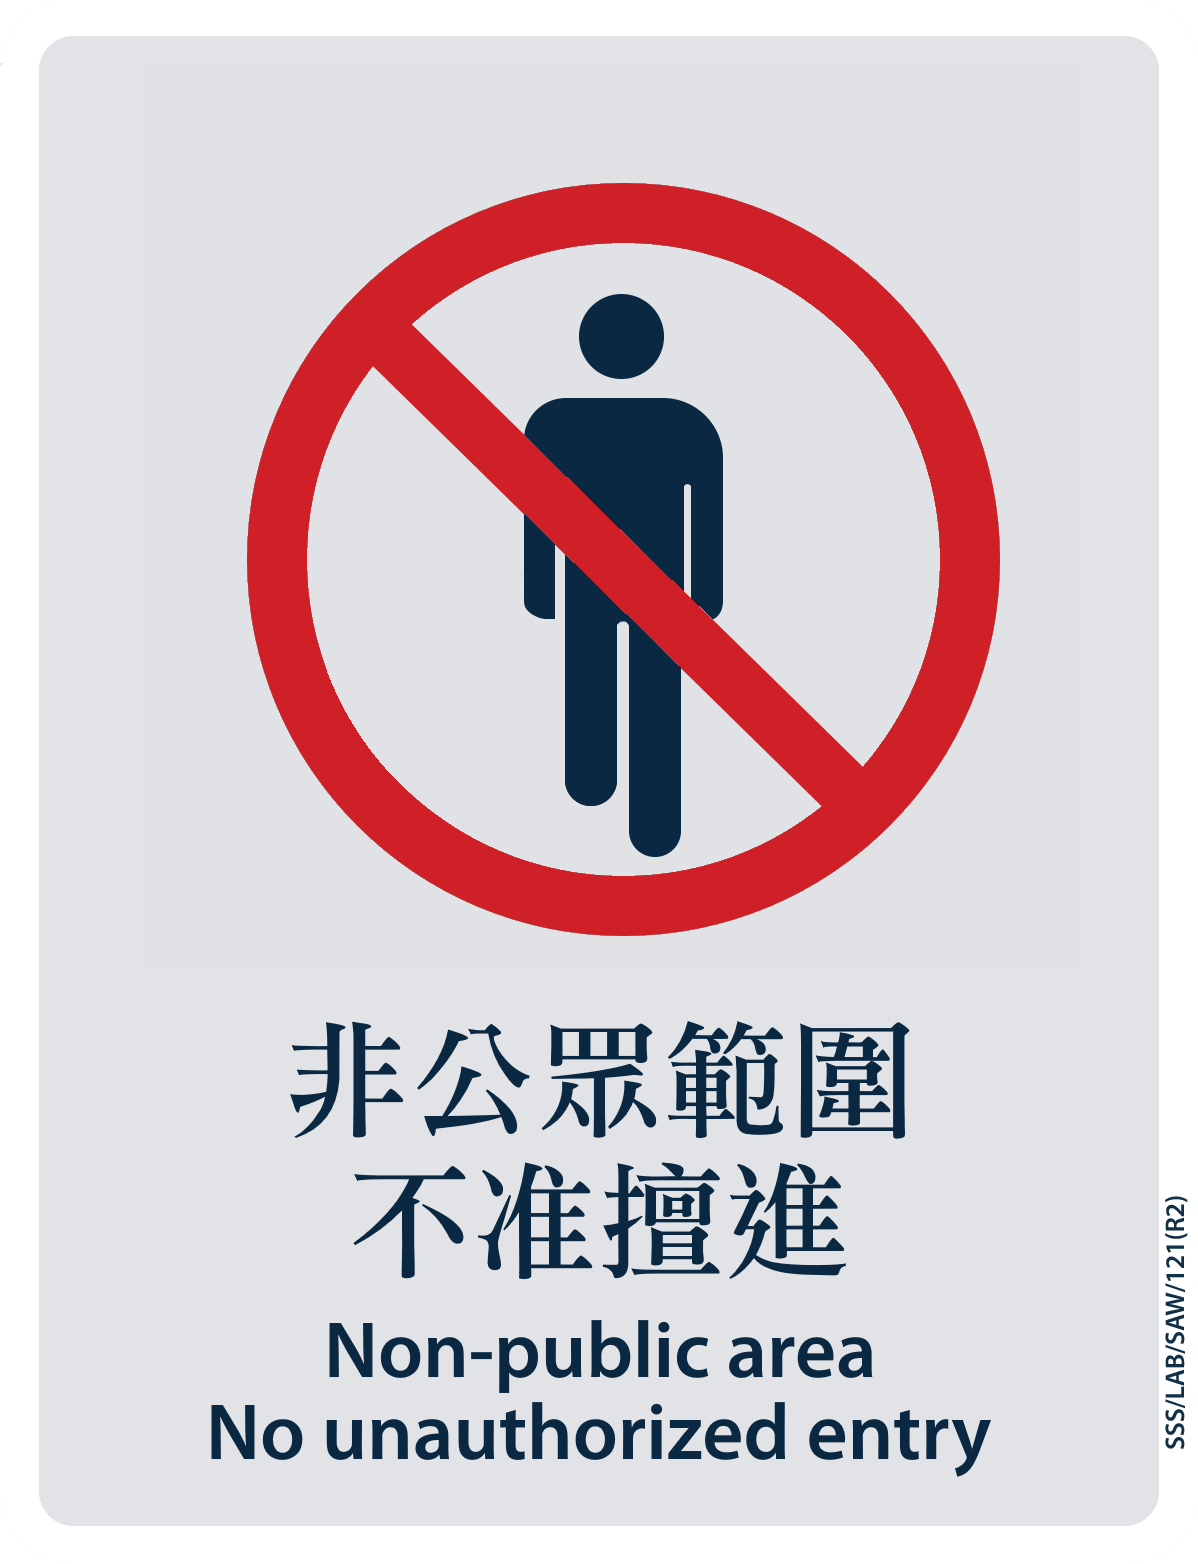 MTR sticker: Non-public area, no unauthorized entry.